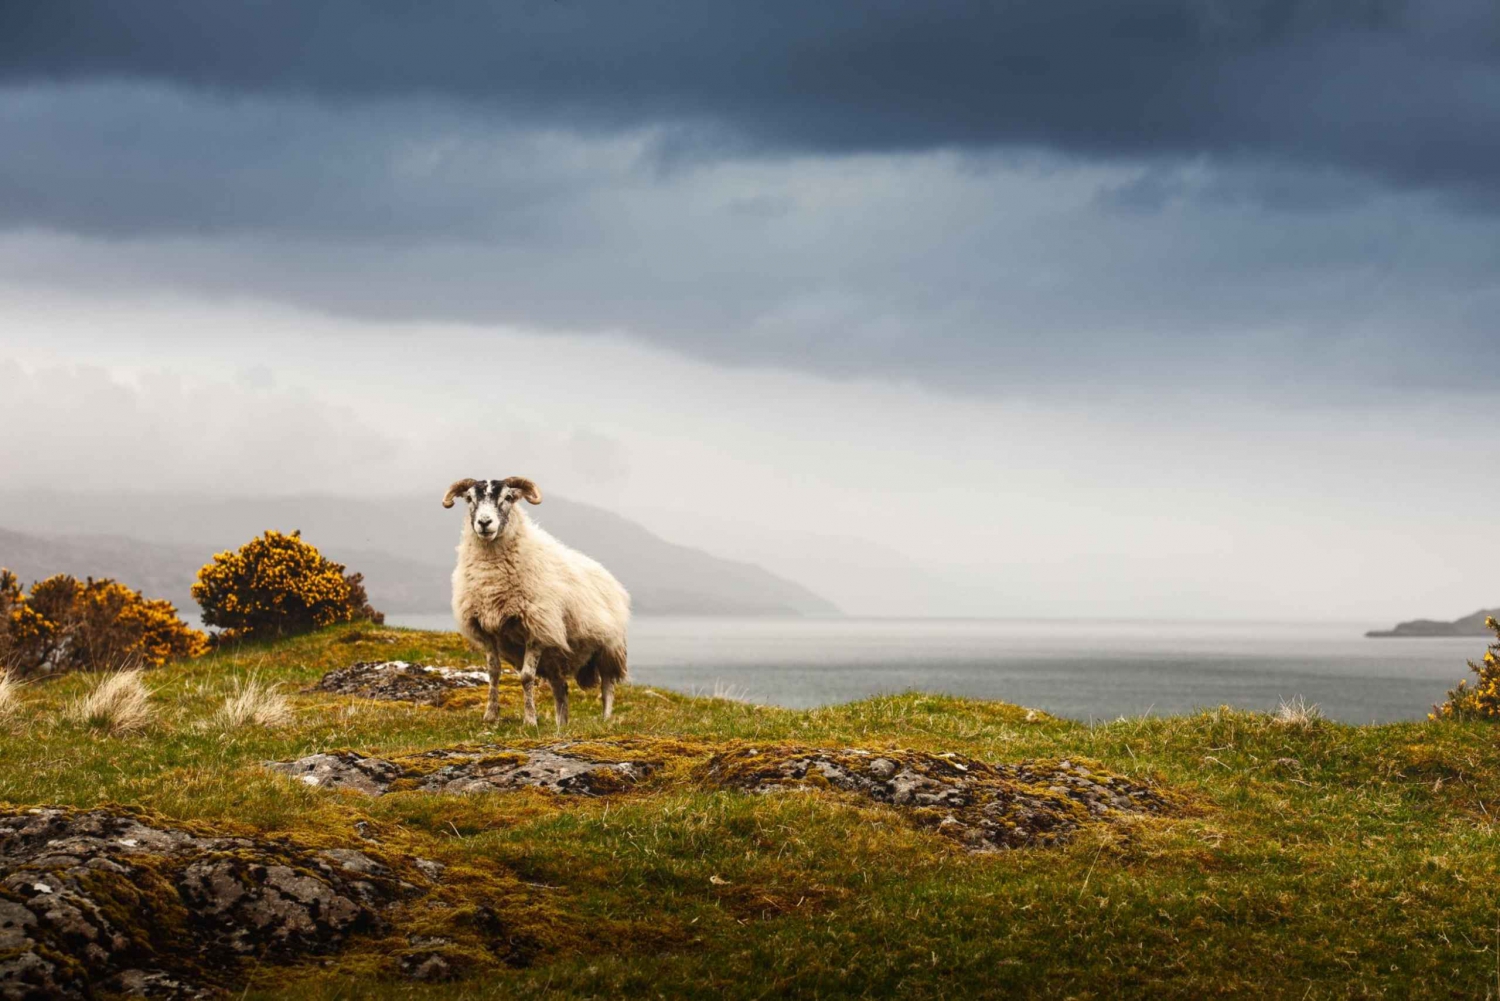 Iona, Mull en Isle of Skye: 5-daagse rondreis vanuit Edinburgh